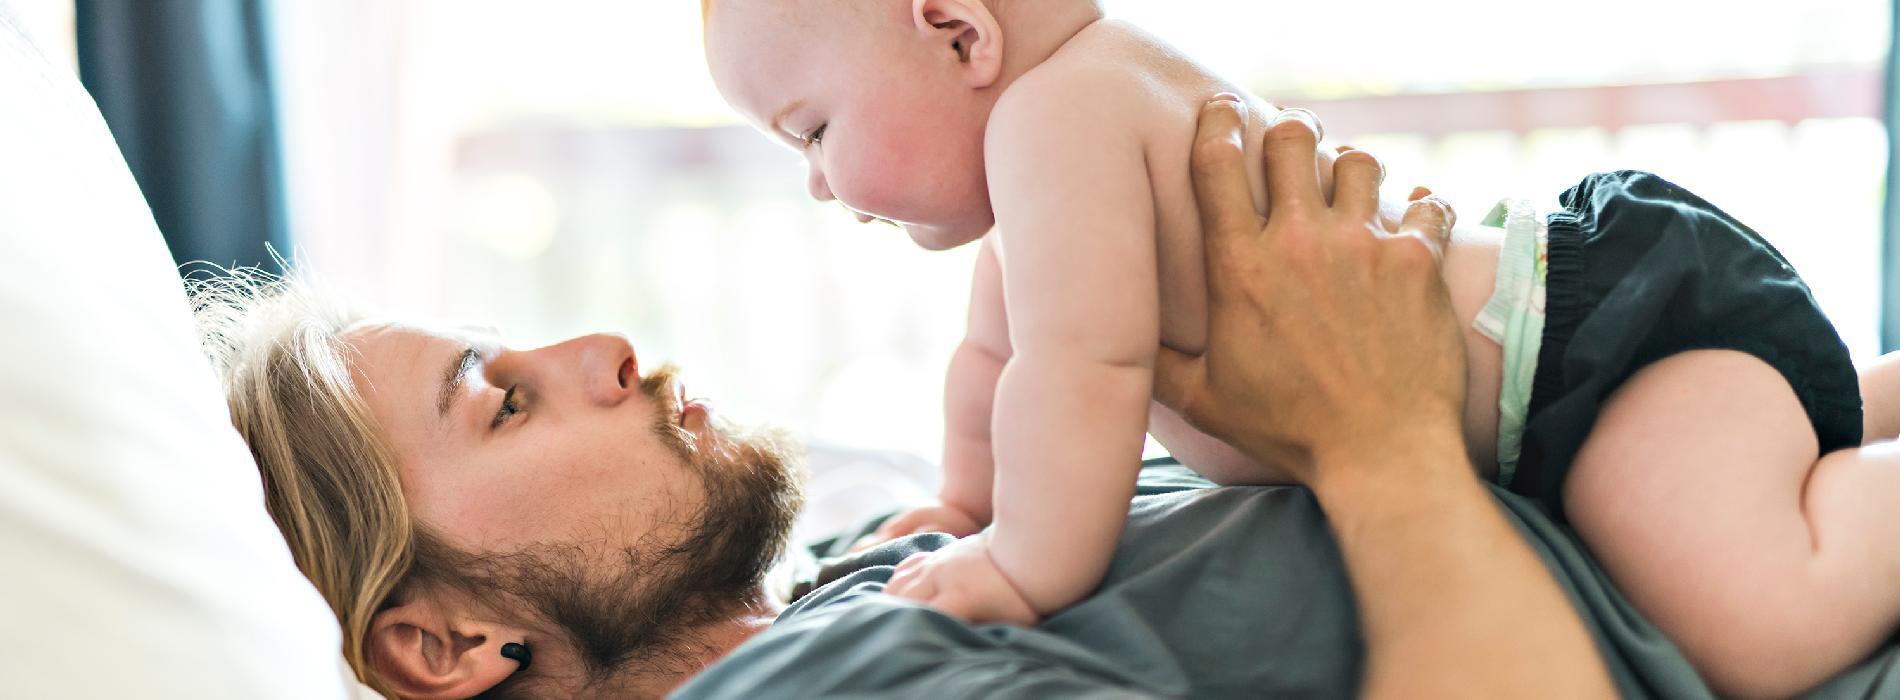 Zaprzeczenie ojcostwa - czy potrzebne jest badanie na ojcostwo?